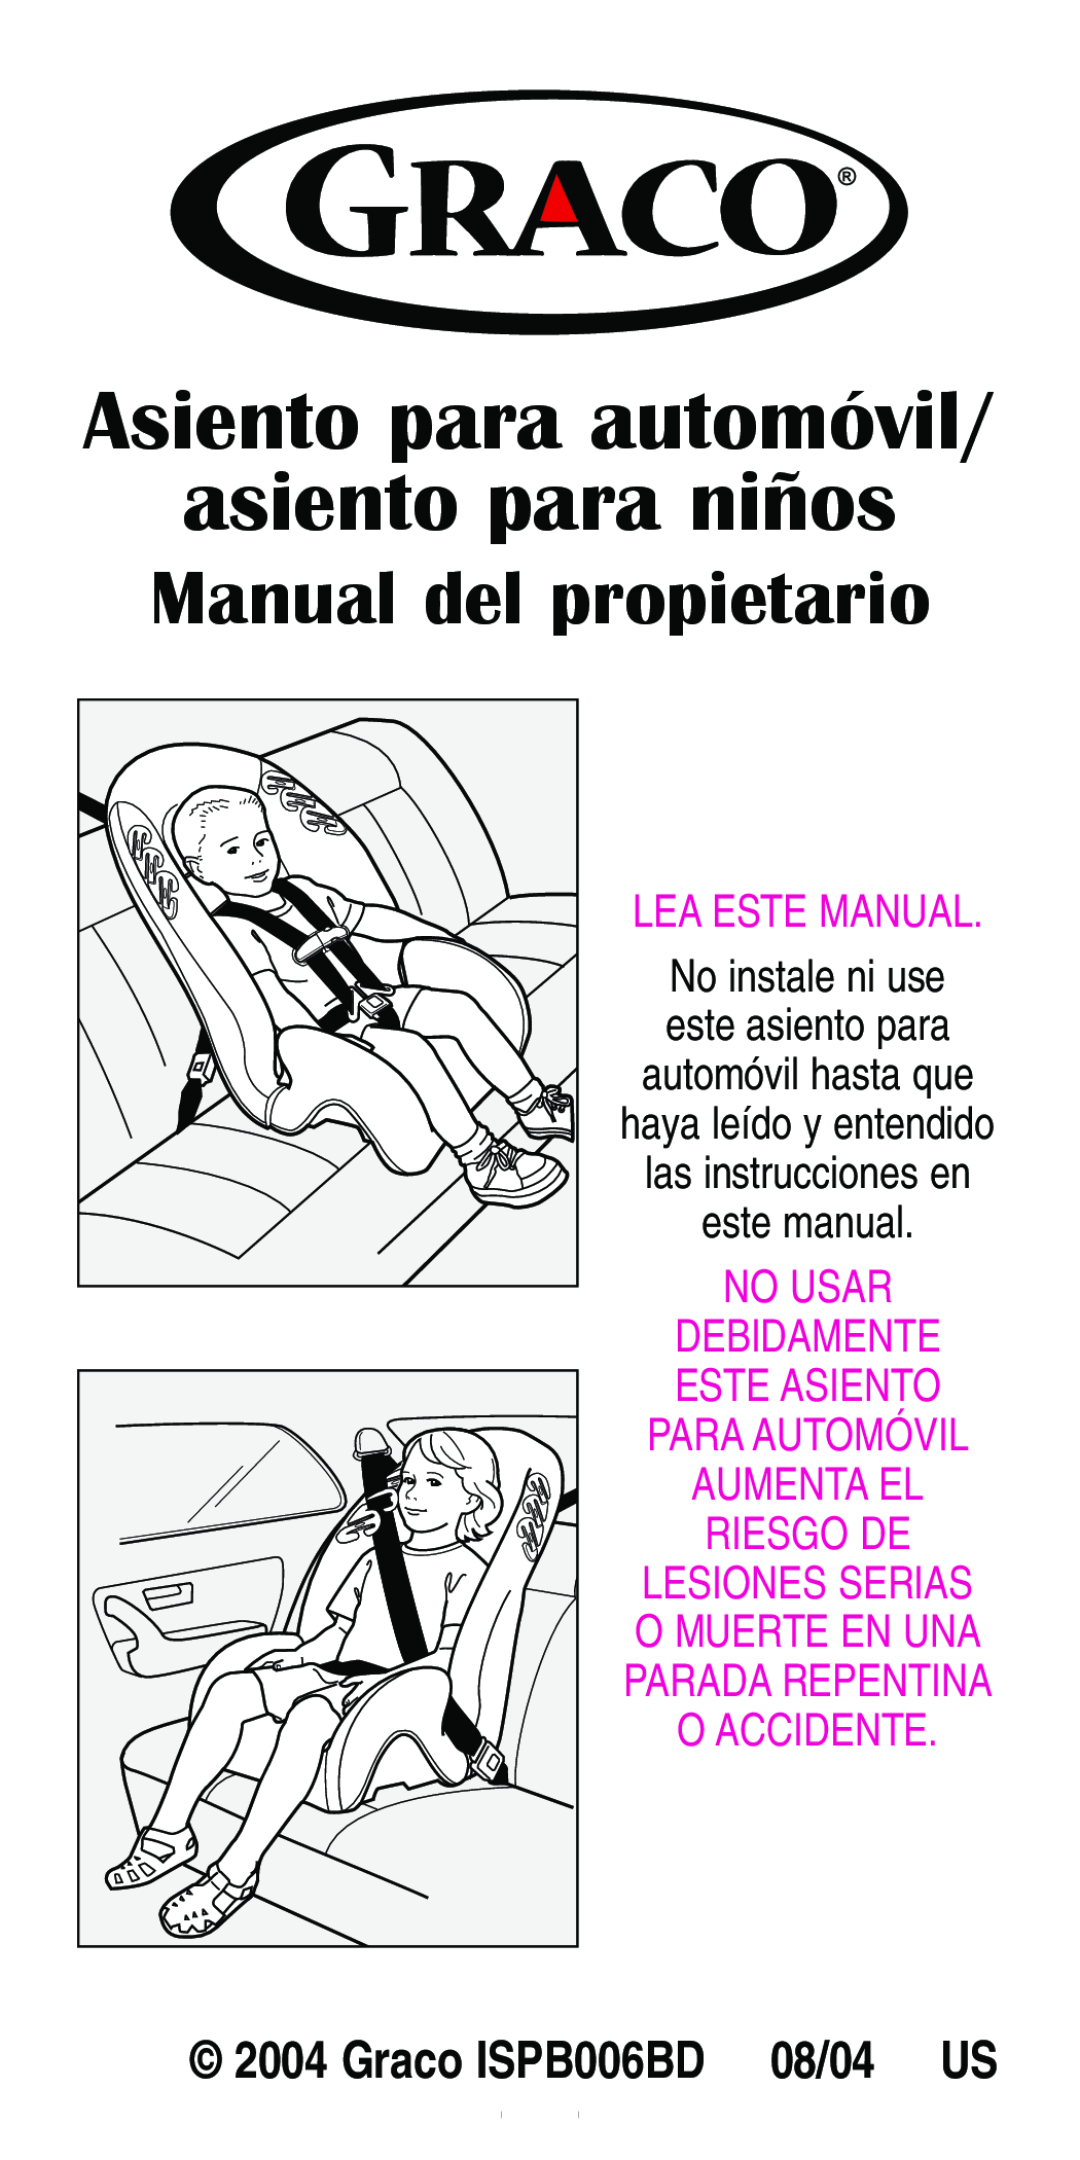 Graco Car Seat/Booster manual asiento para niños, Manual del propietario, Lea Este Manual, Asiento para automóvil 